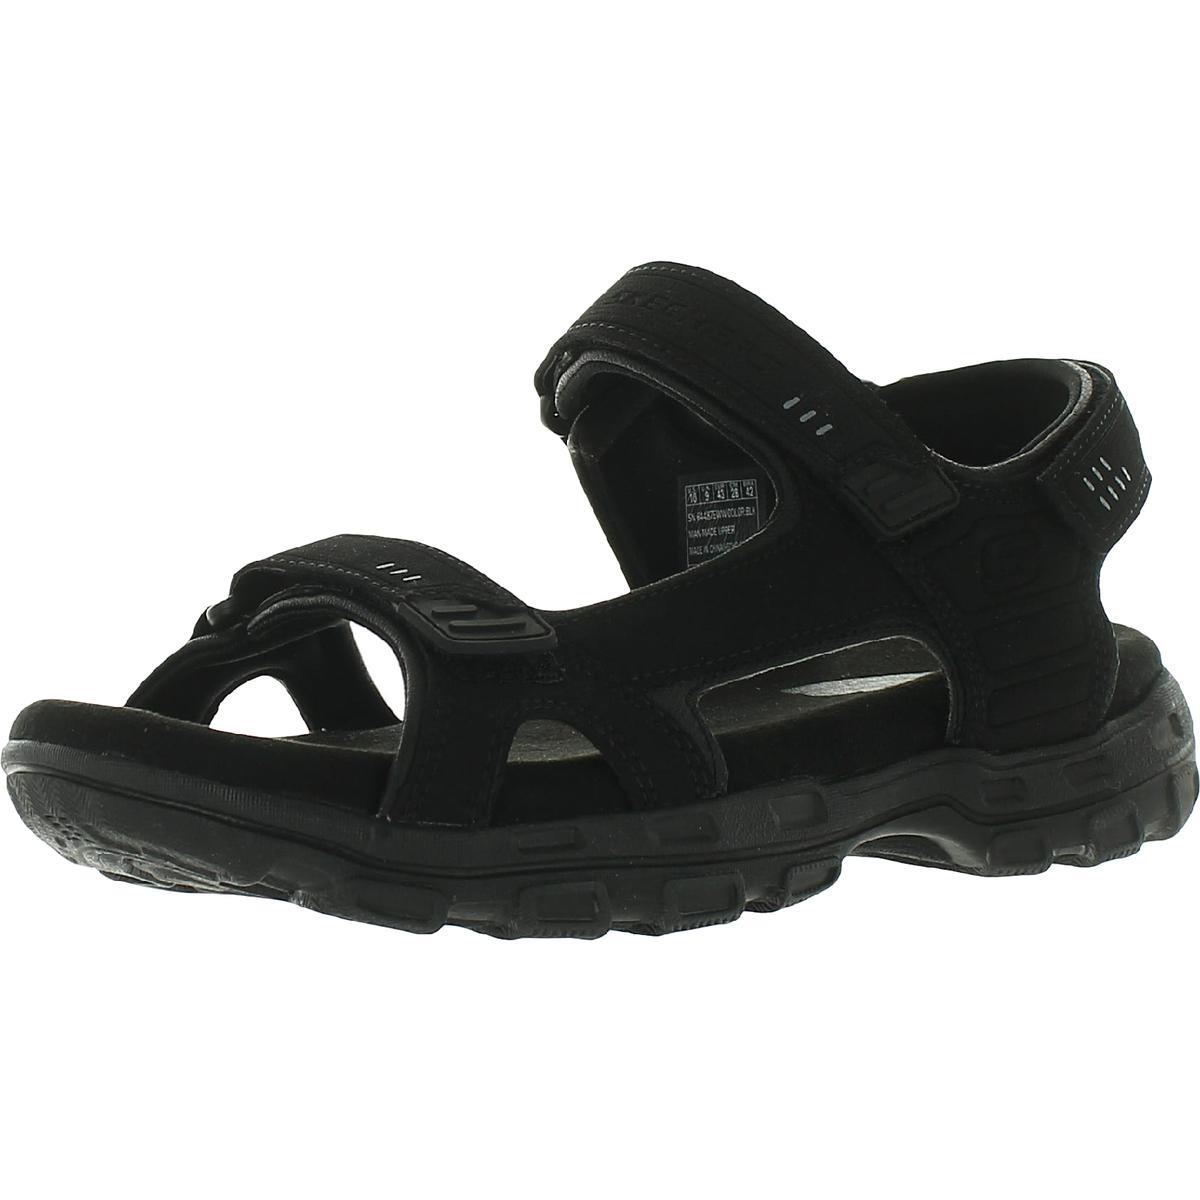 Skechers Mens Garver-louden Sport Slip On Slide Sandals Shoes Bhfo 6606 Black